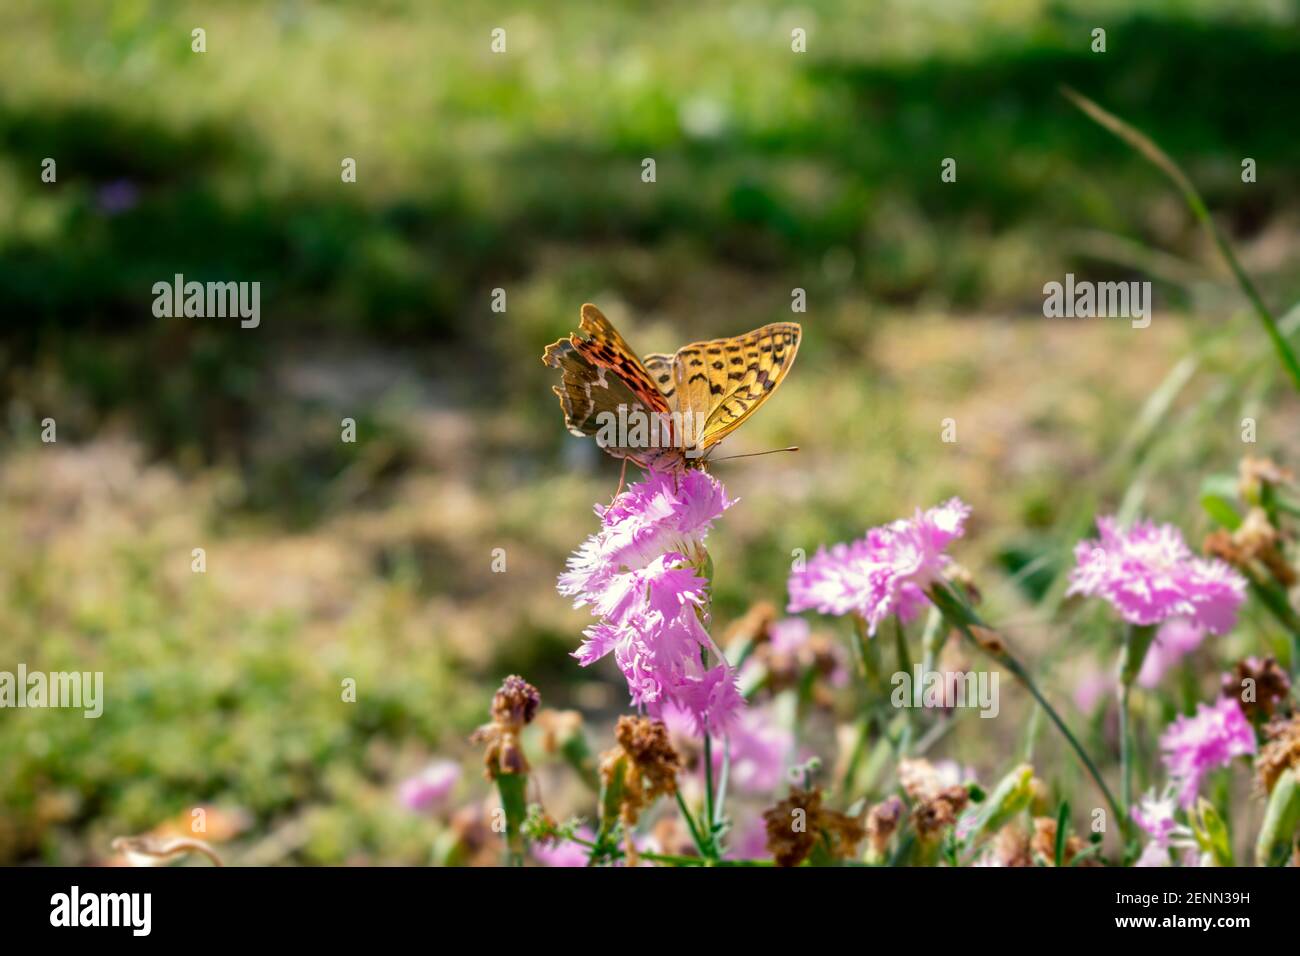 Mariposa monarca en una flor púrpura. Insectos suaves y elegantes que se alimentan de las flores. El concepto de serenidad, armonía, calma y armonía Foto de stock